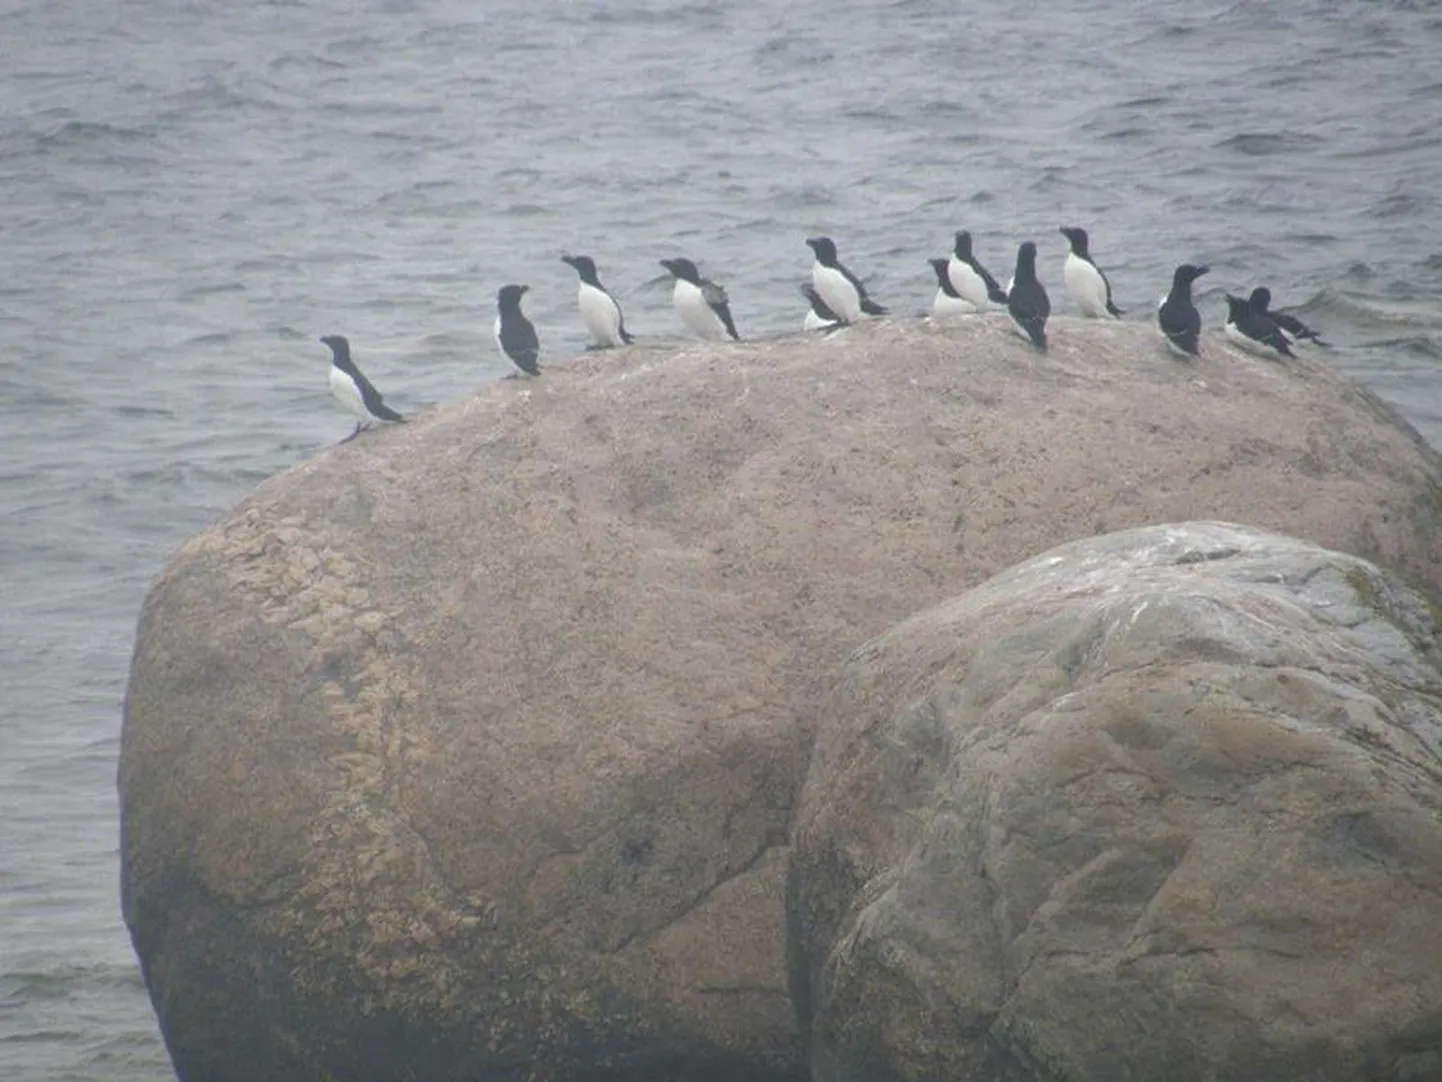 Eesti põhjapoolseimal saarel Vaindlool võib näha pesitsemas üht haruldast lindu alki ehk Alca torda’t, kes välimuselt meenutab pisikest pingviini.